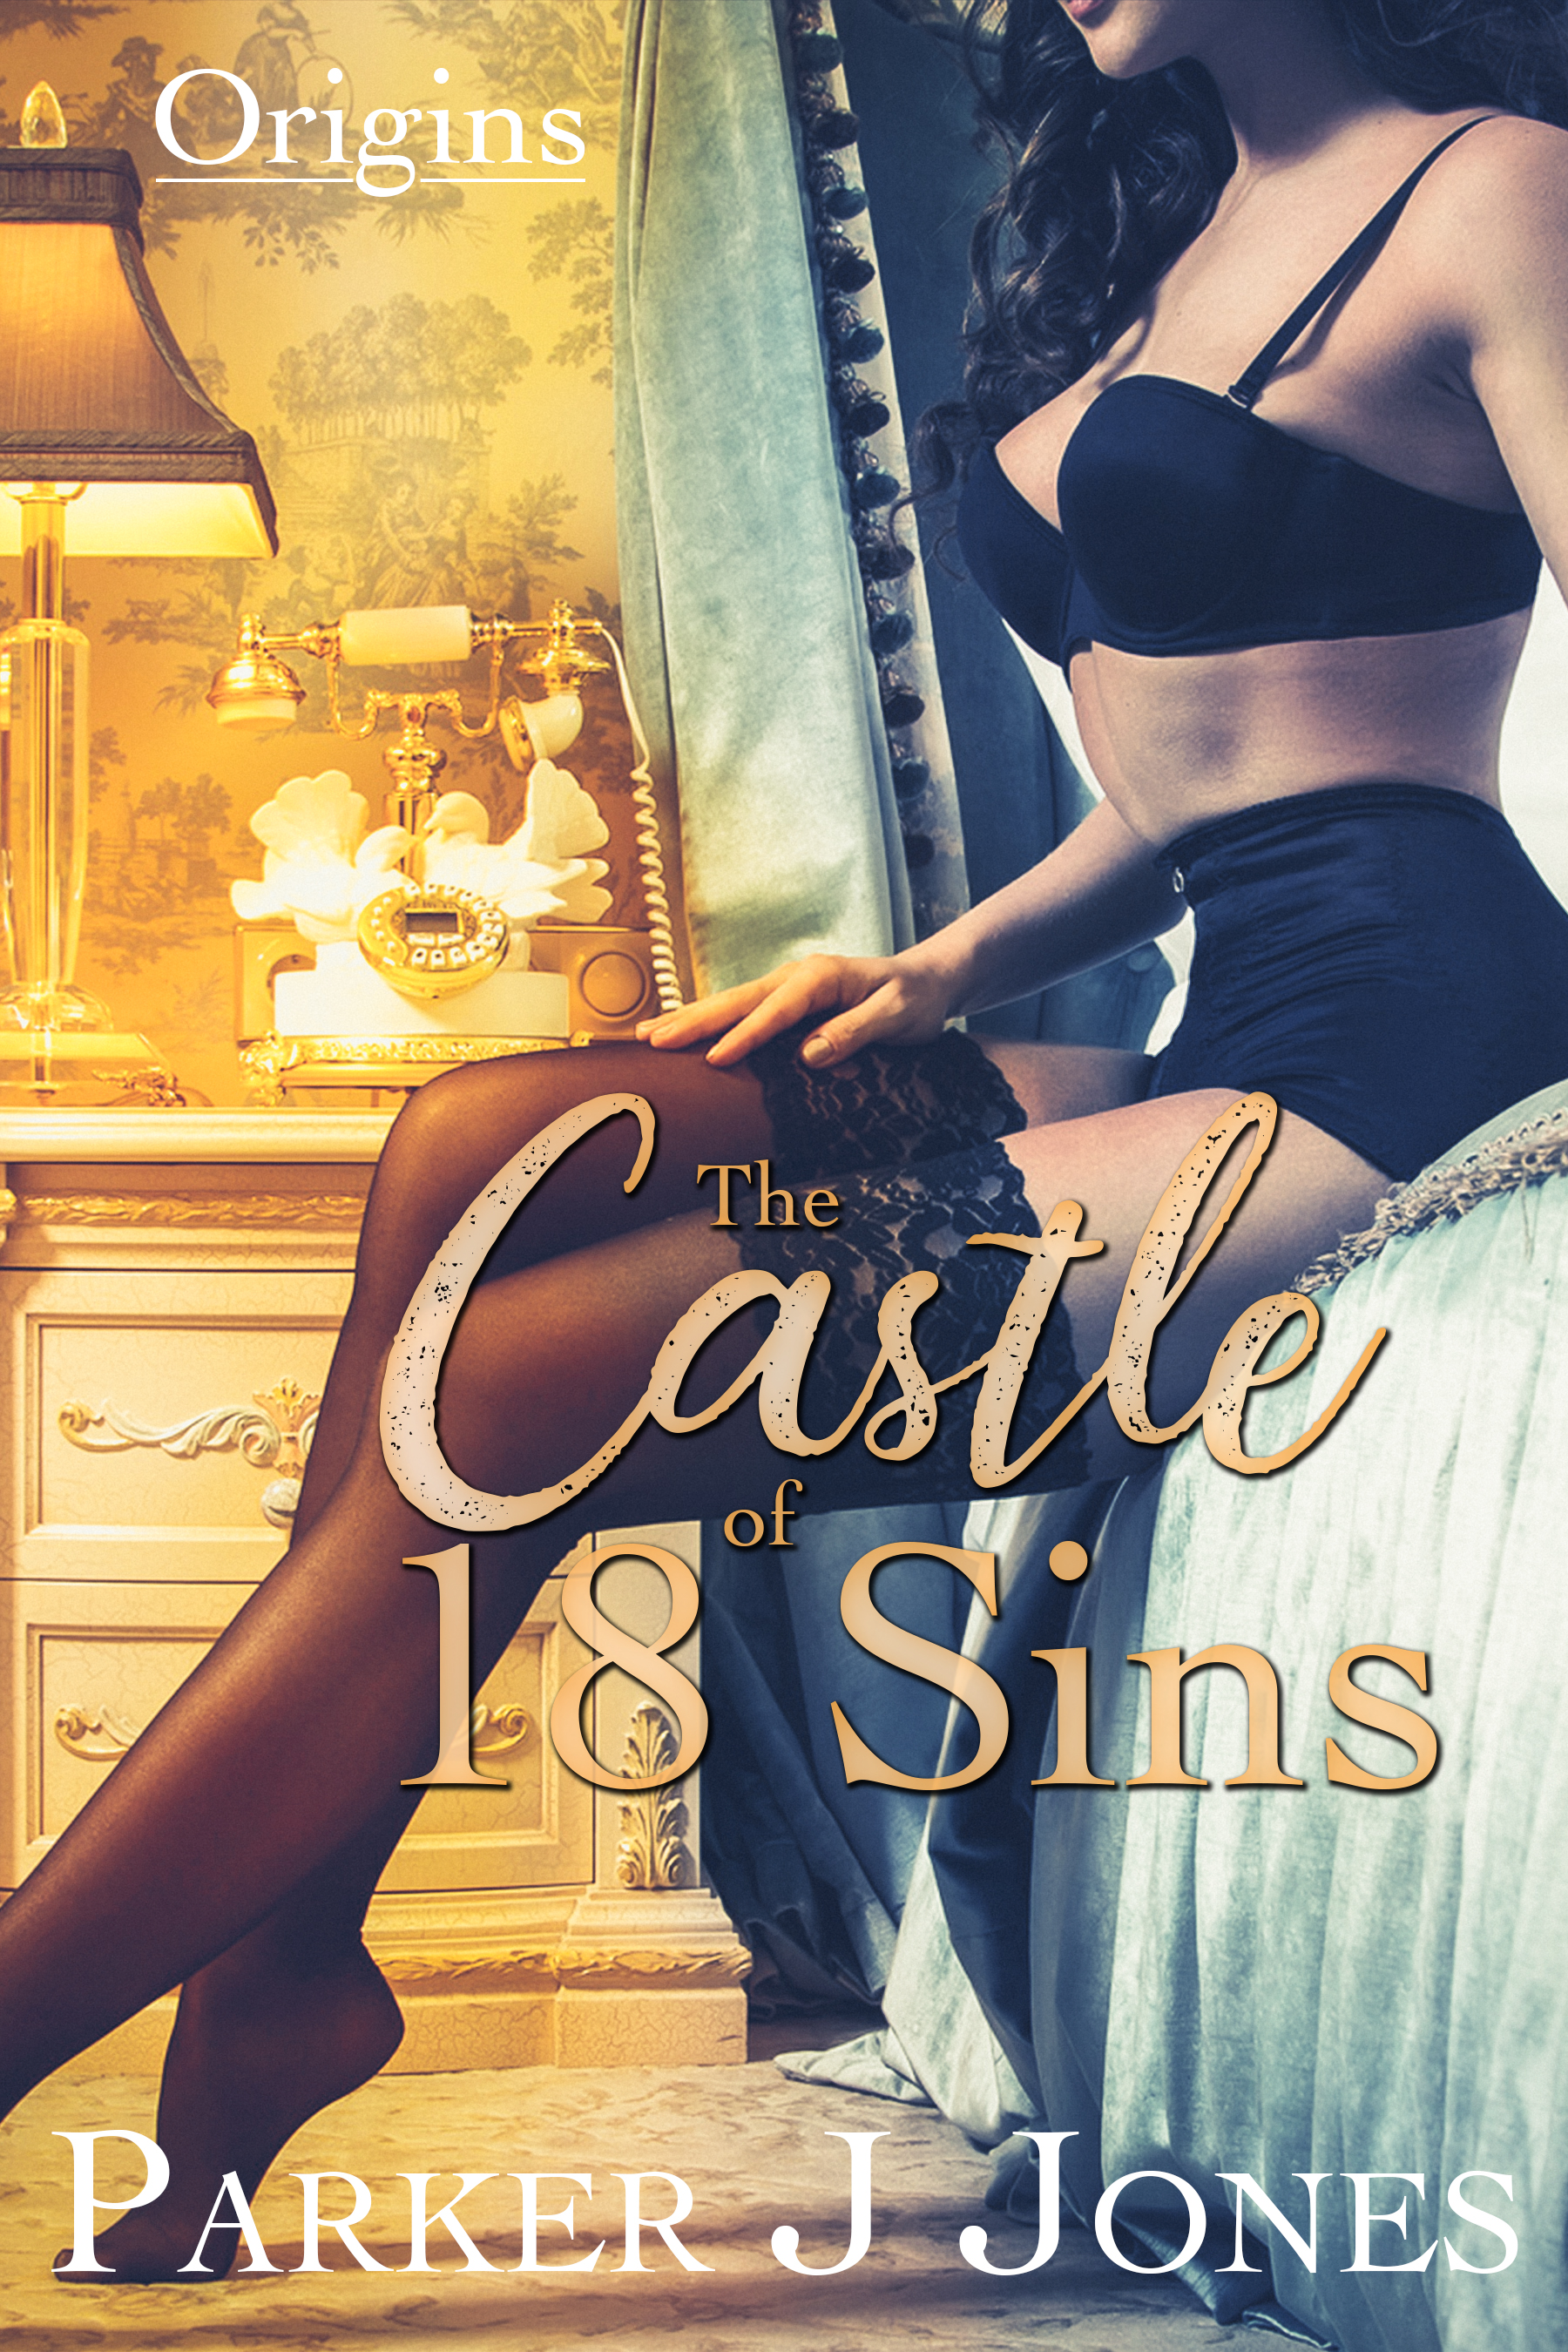 FREE: The Castle of 18 Sins by Parker J Jones